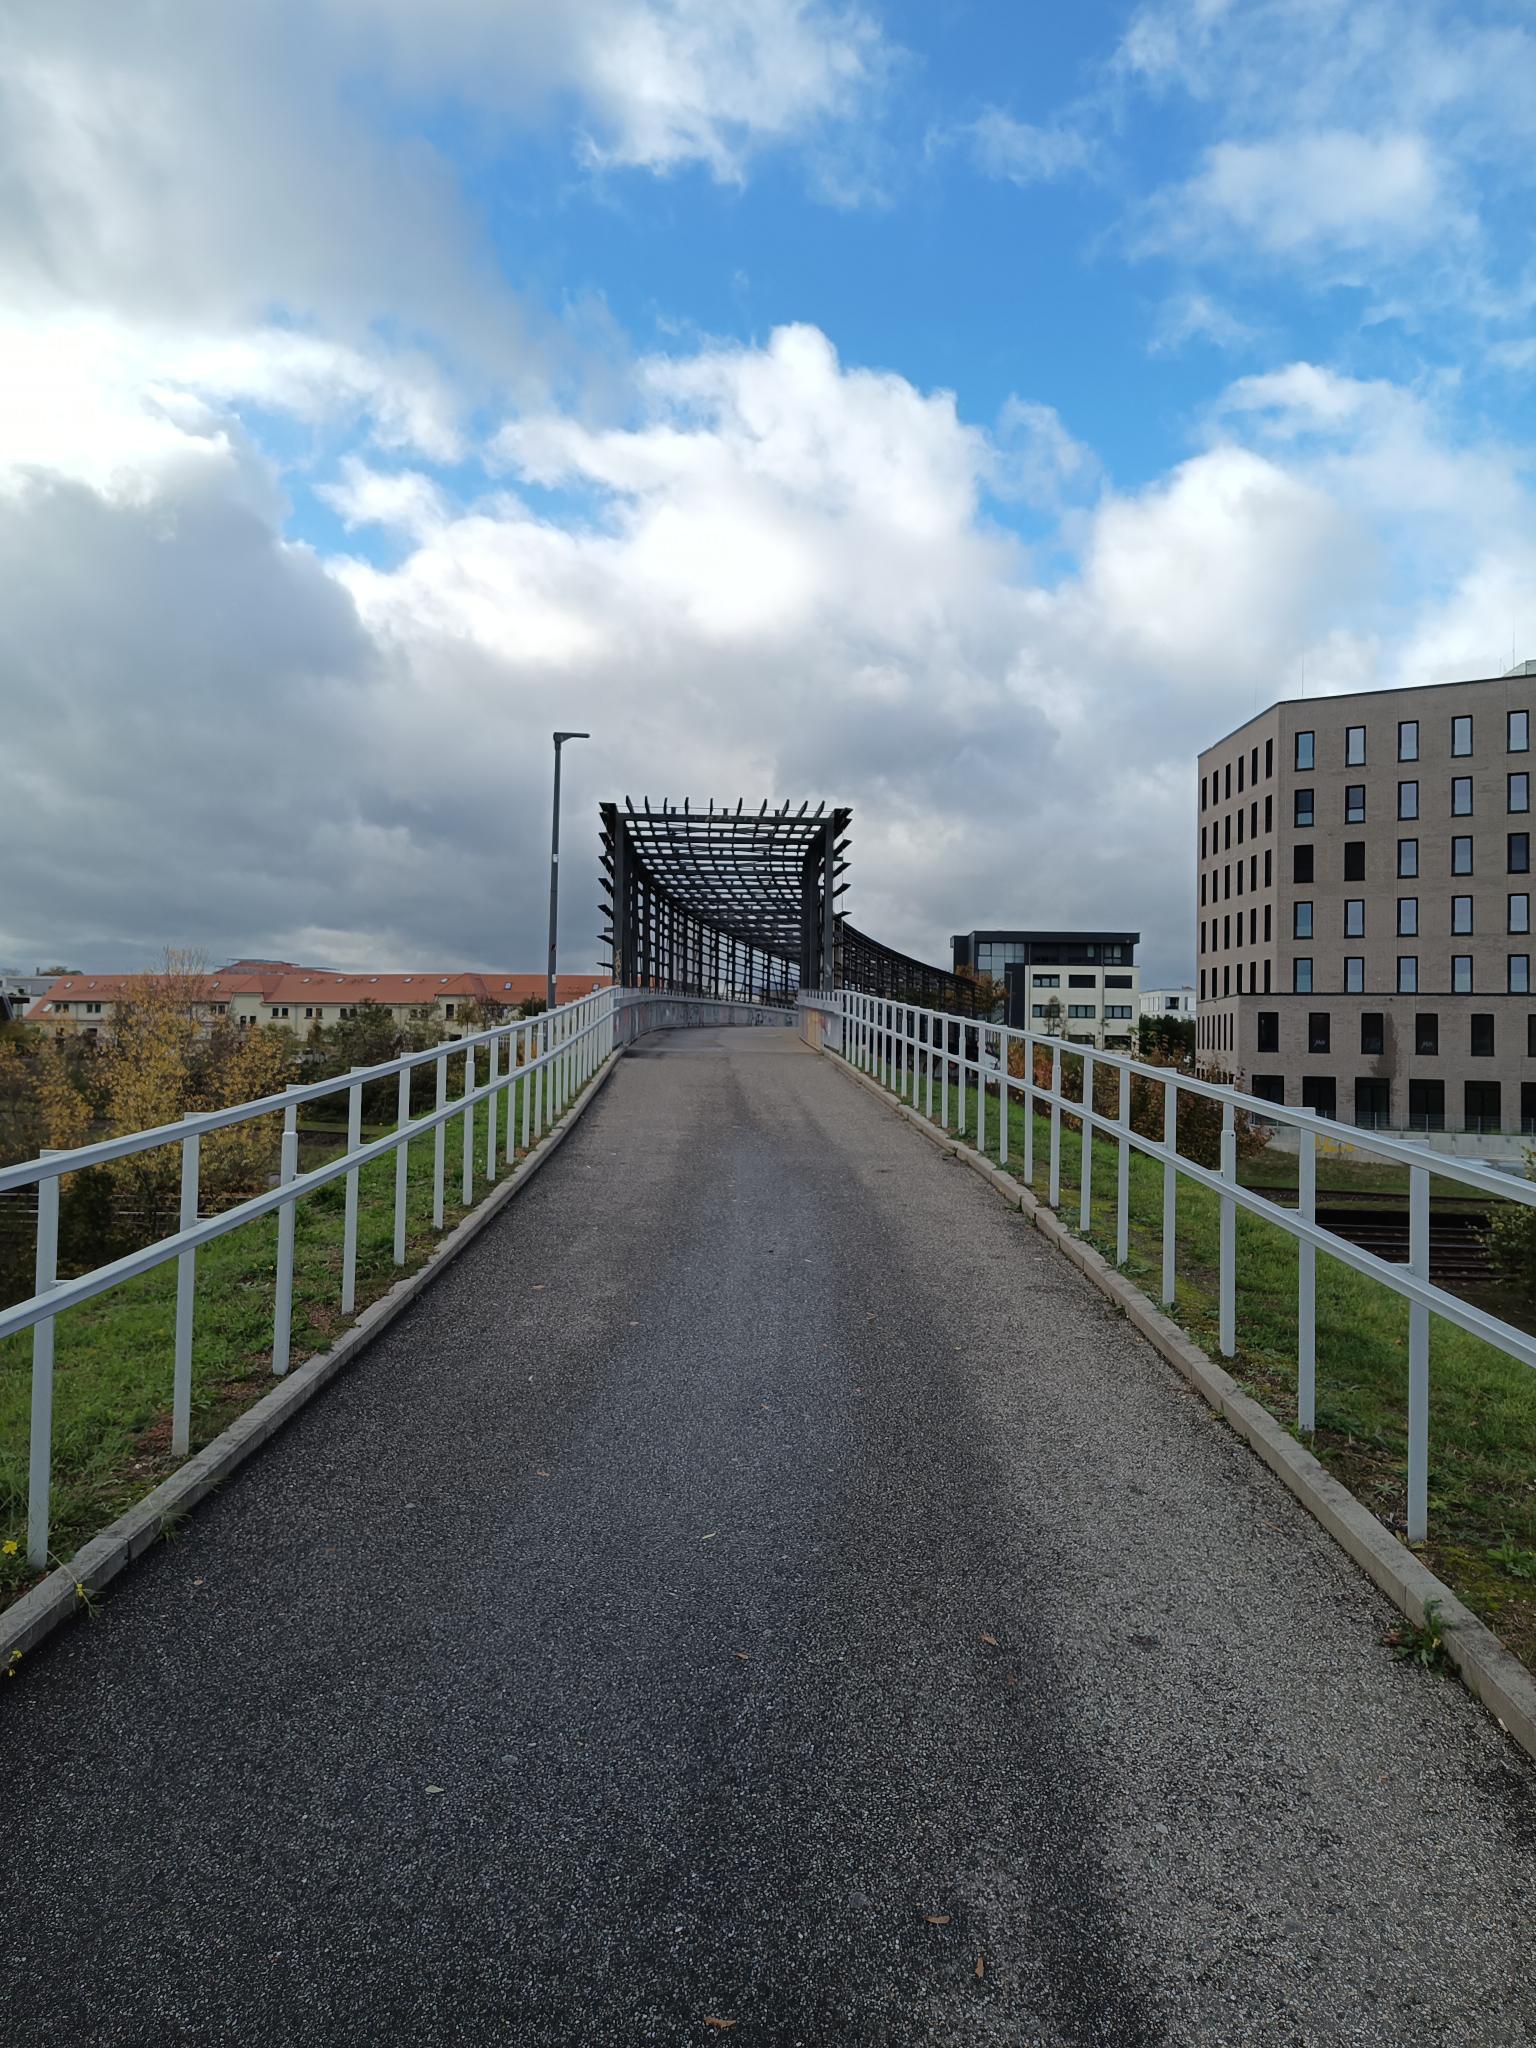 Datei:Brücke LGS Landau.jpeg